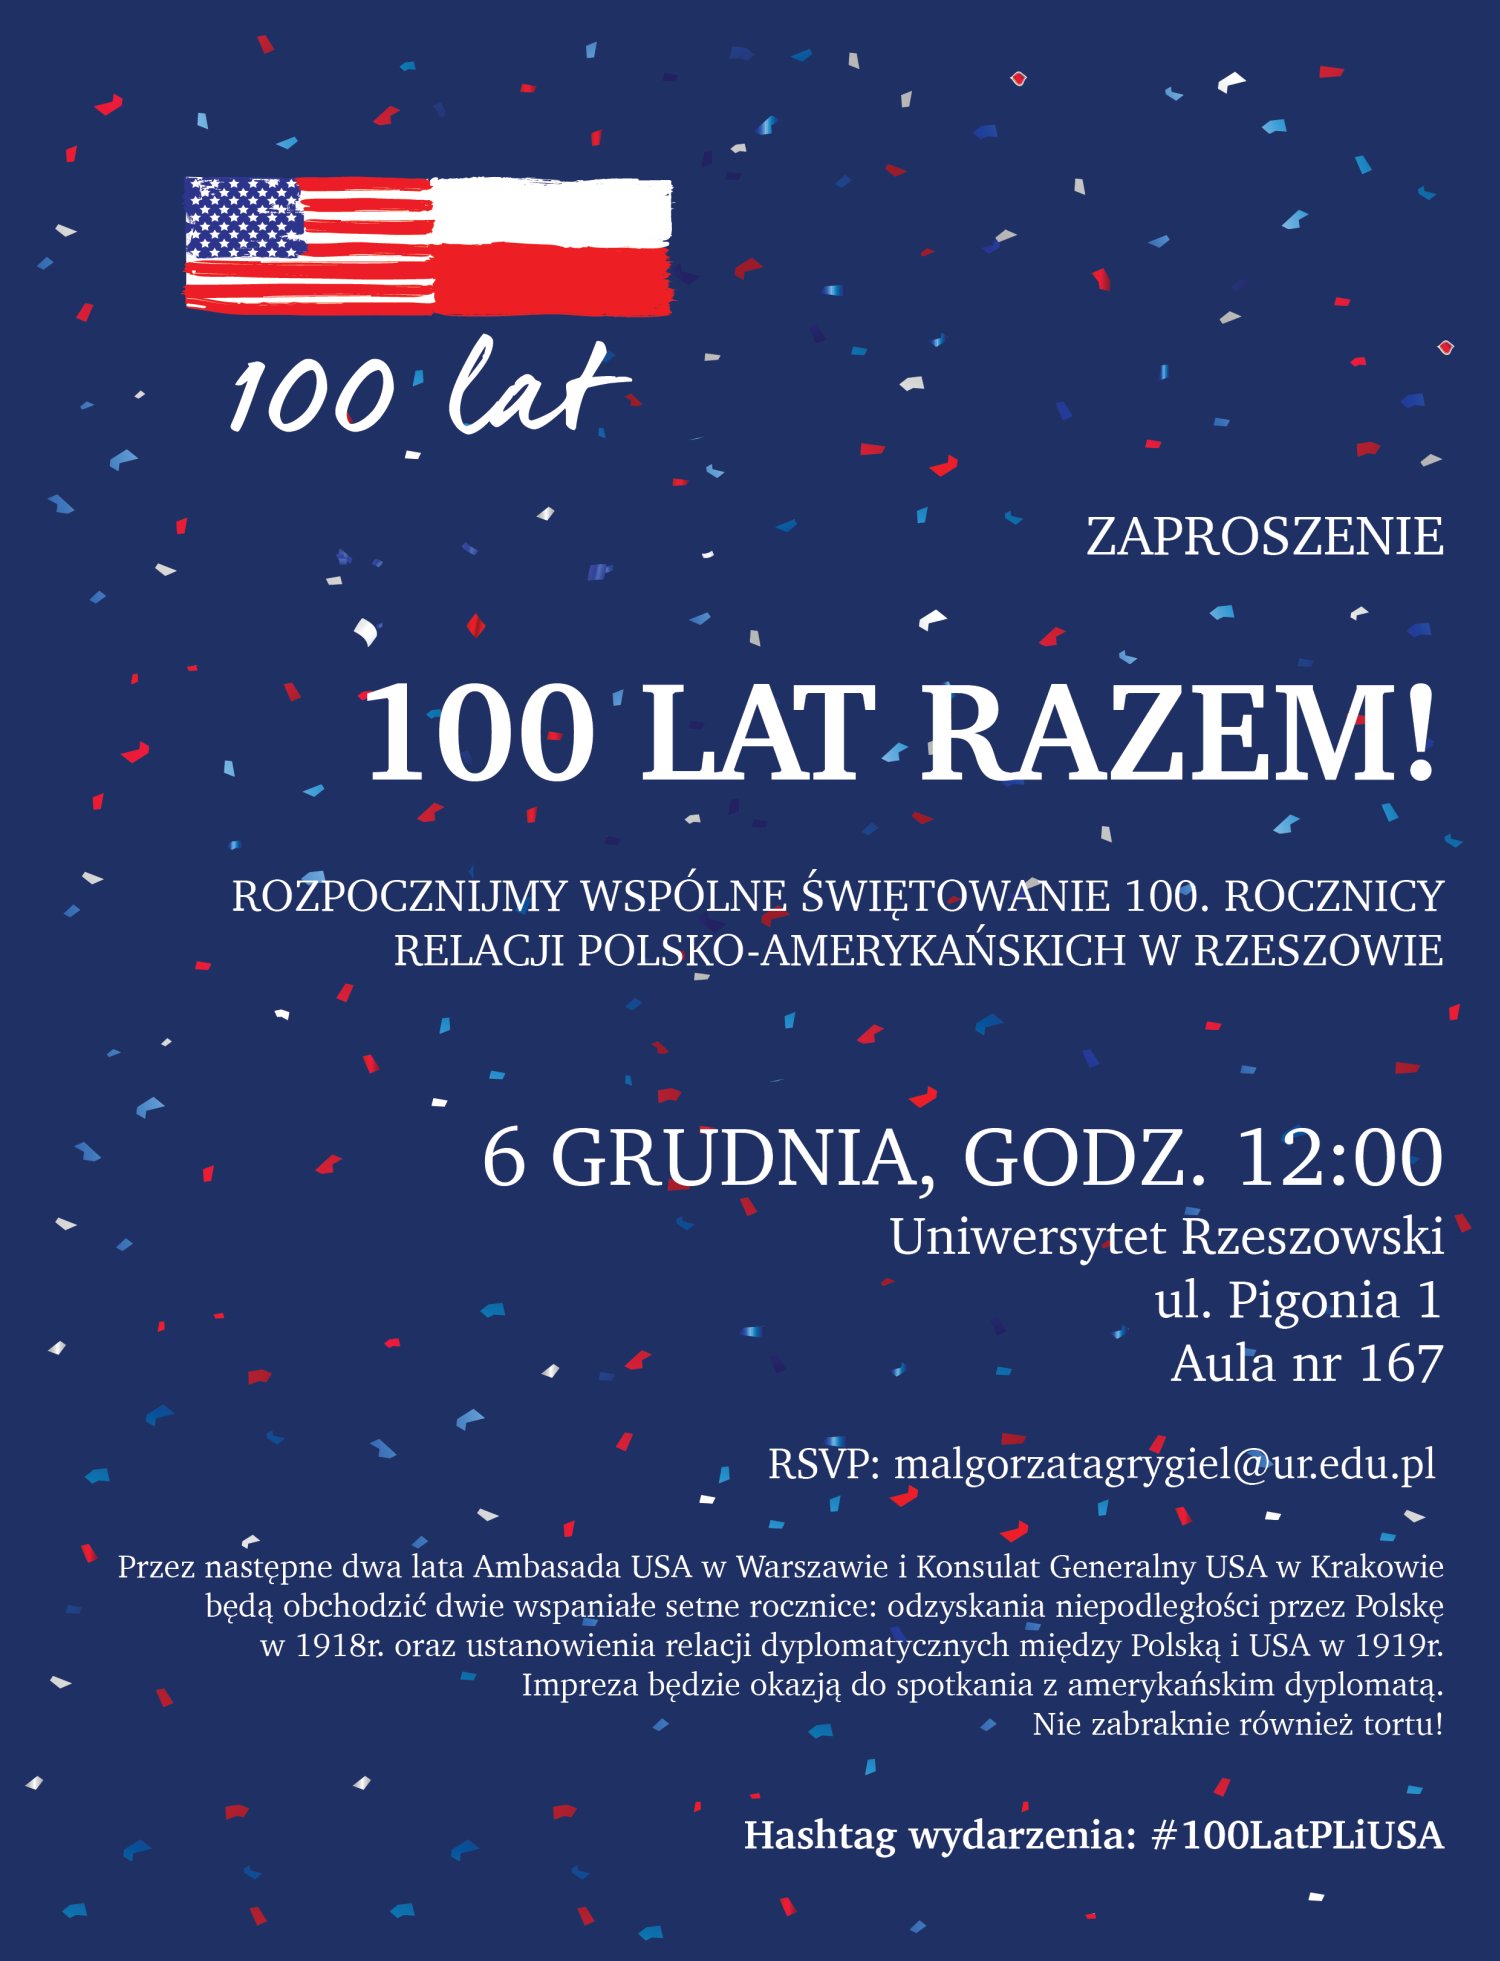 100. rocznica relacji polsko-amerykańskich